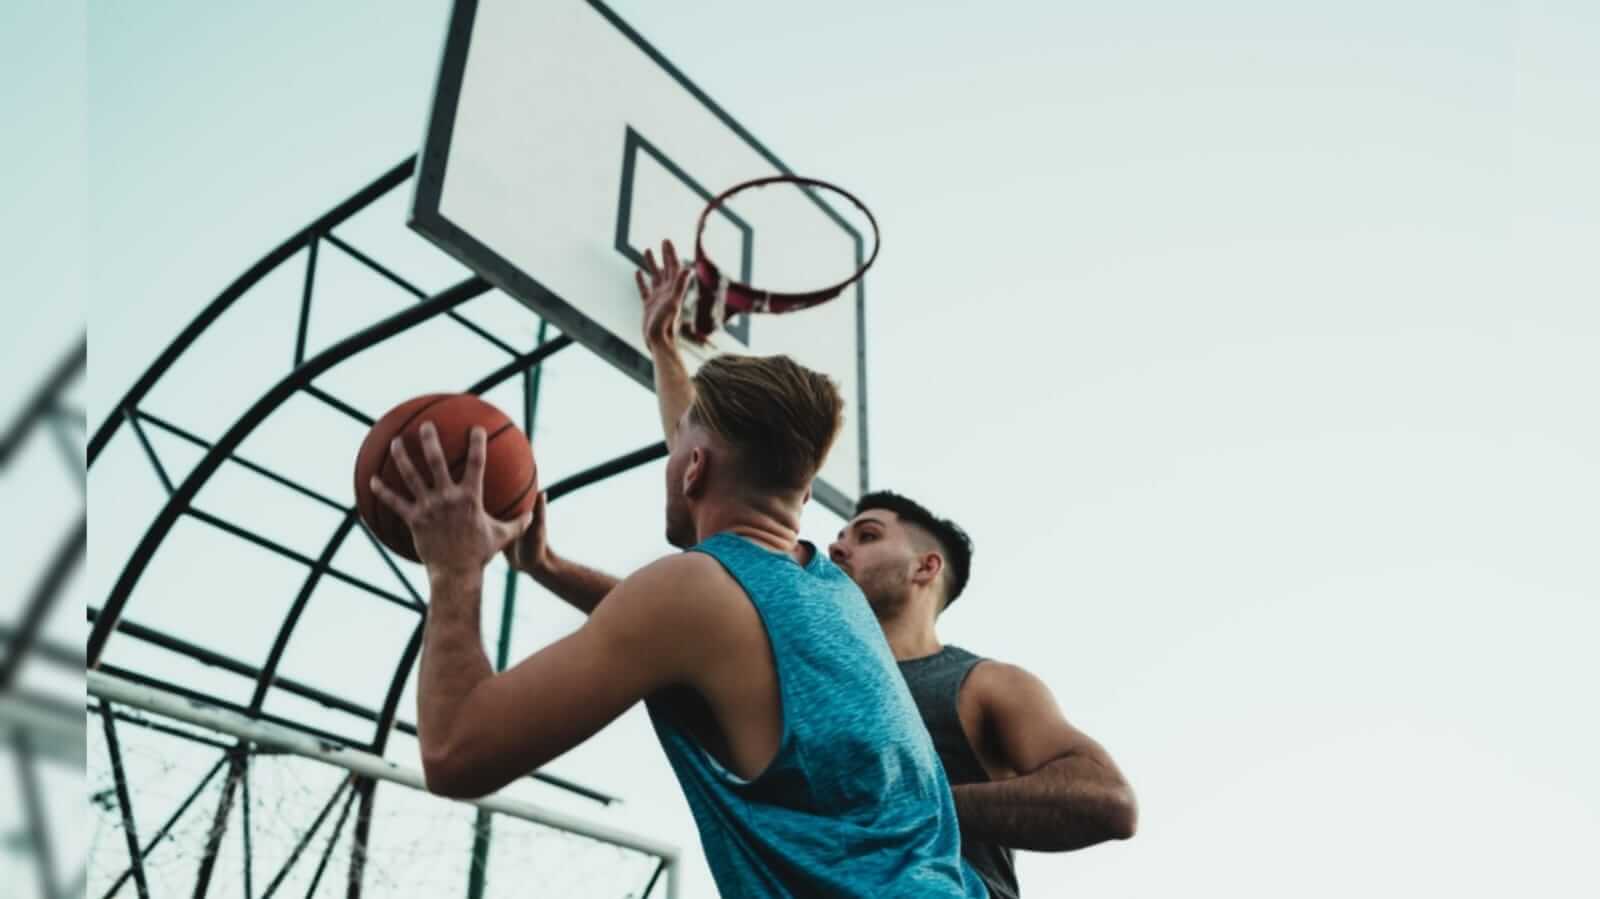 Dois jovens disputando a bola em um jogo de basquete